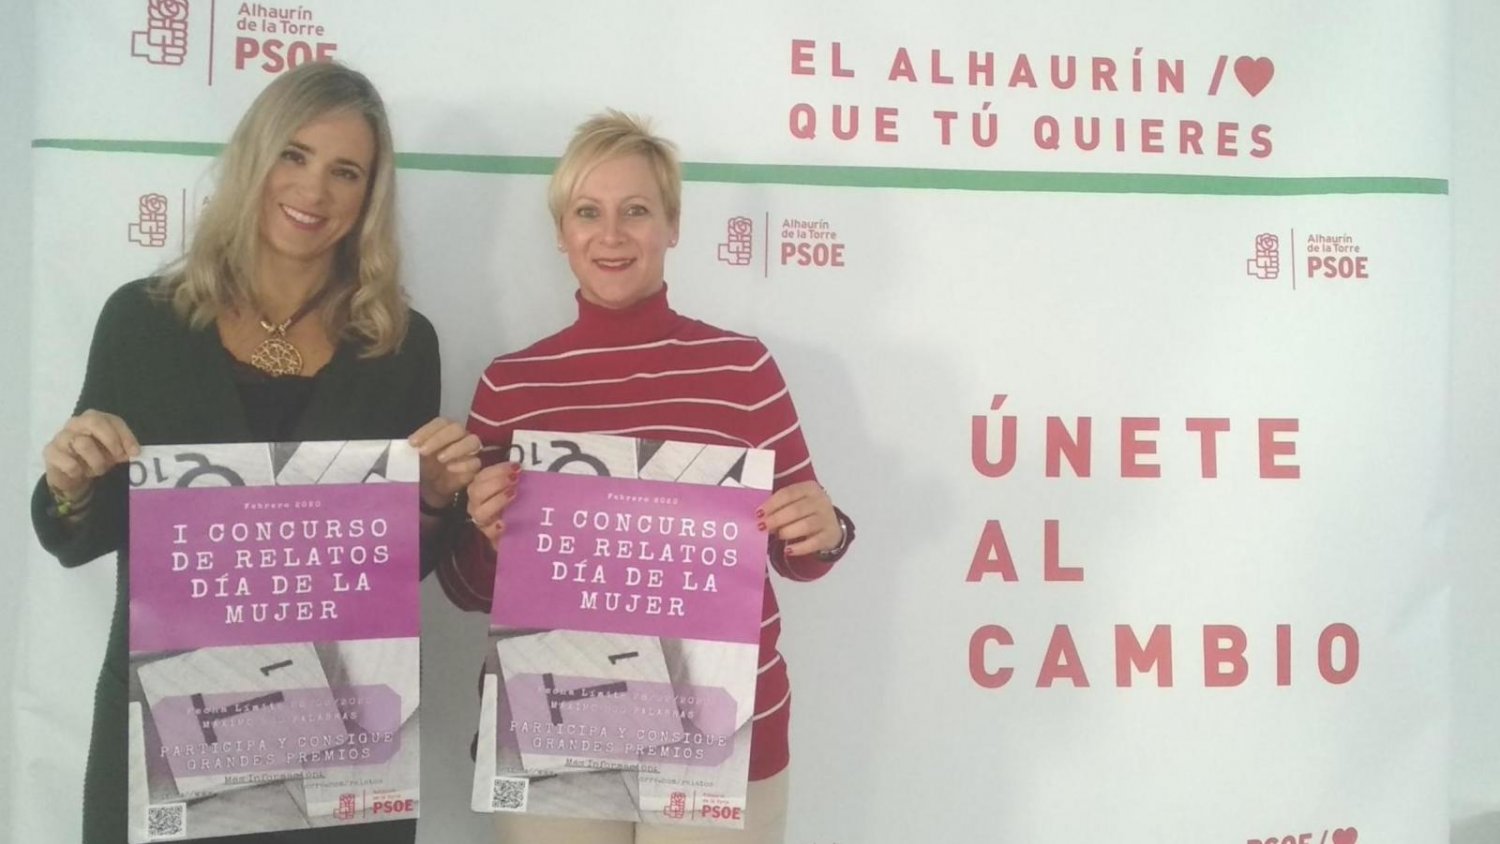 El PSOE de Alhaurín de la Torre presenta el I Concurso de Relatos Día de la Mujer